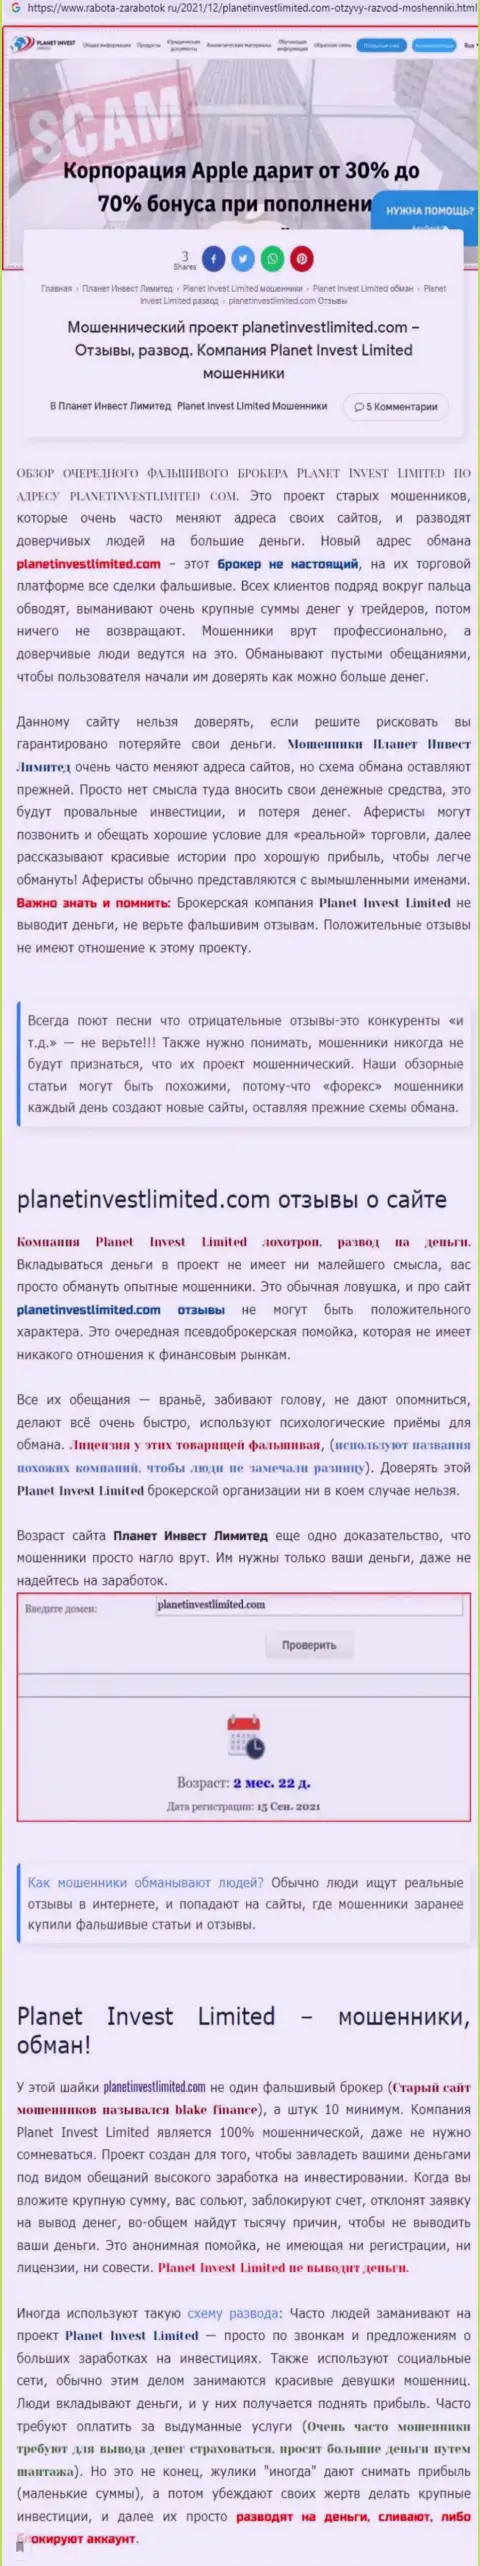 Не опасно ли взаимодействовать с компанией Planet Invest Limited ? (Обзор деяний конторы)